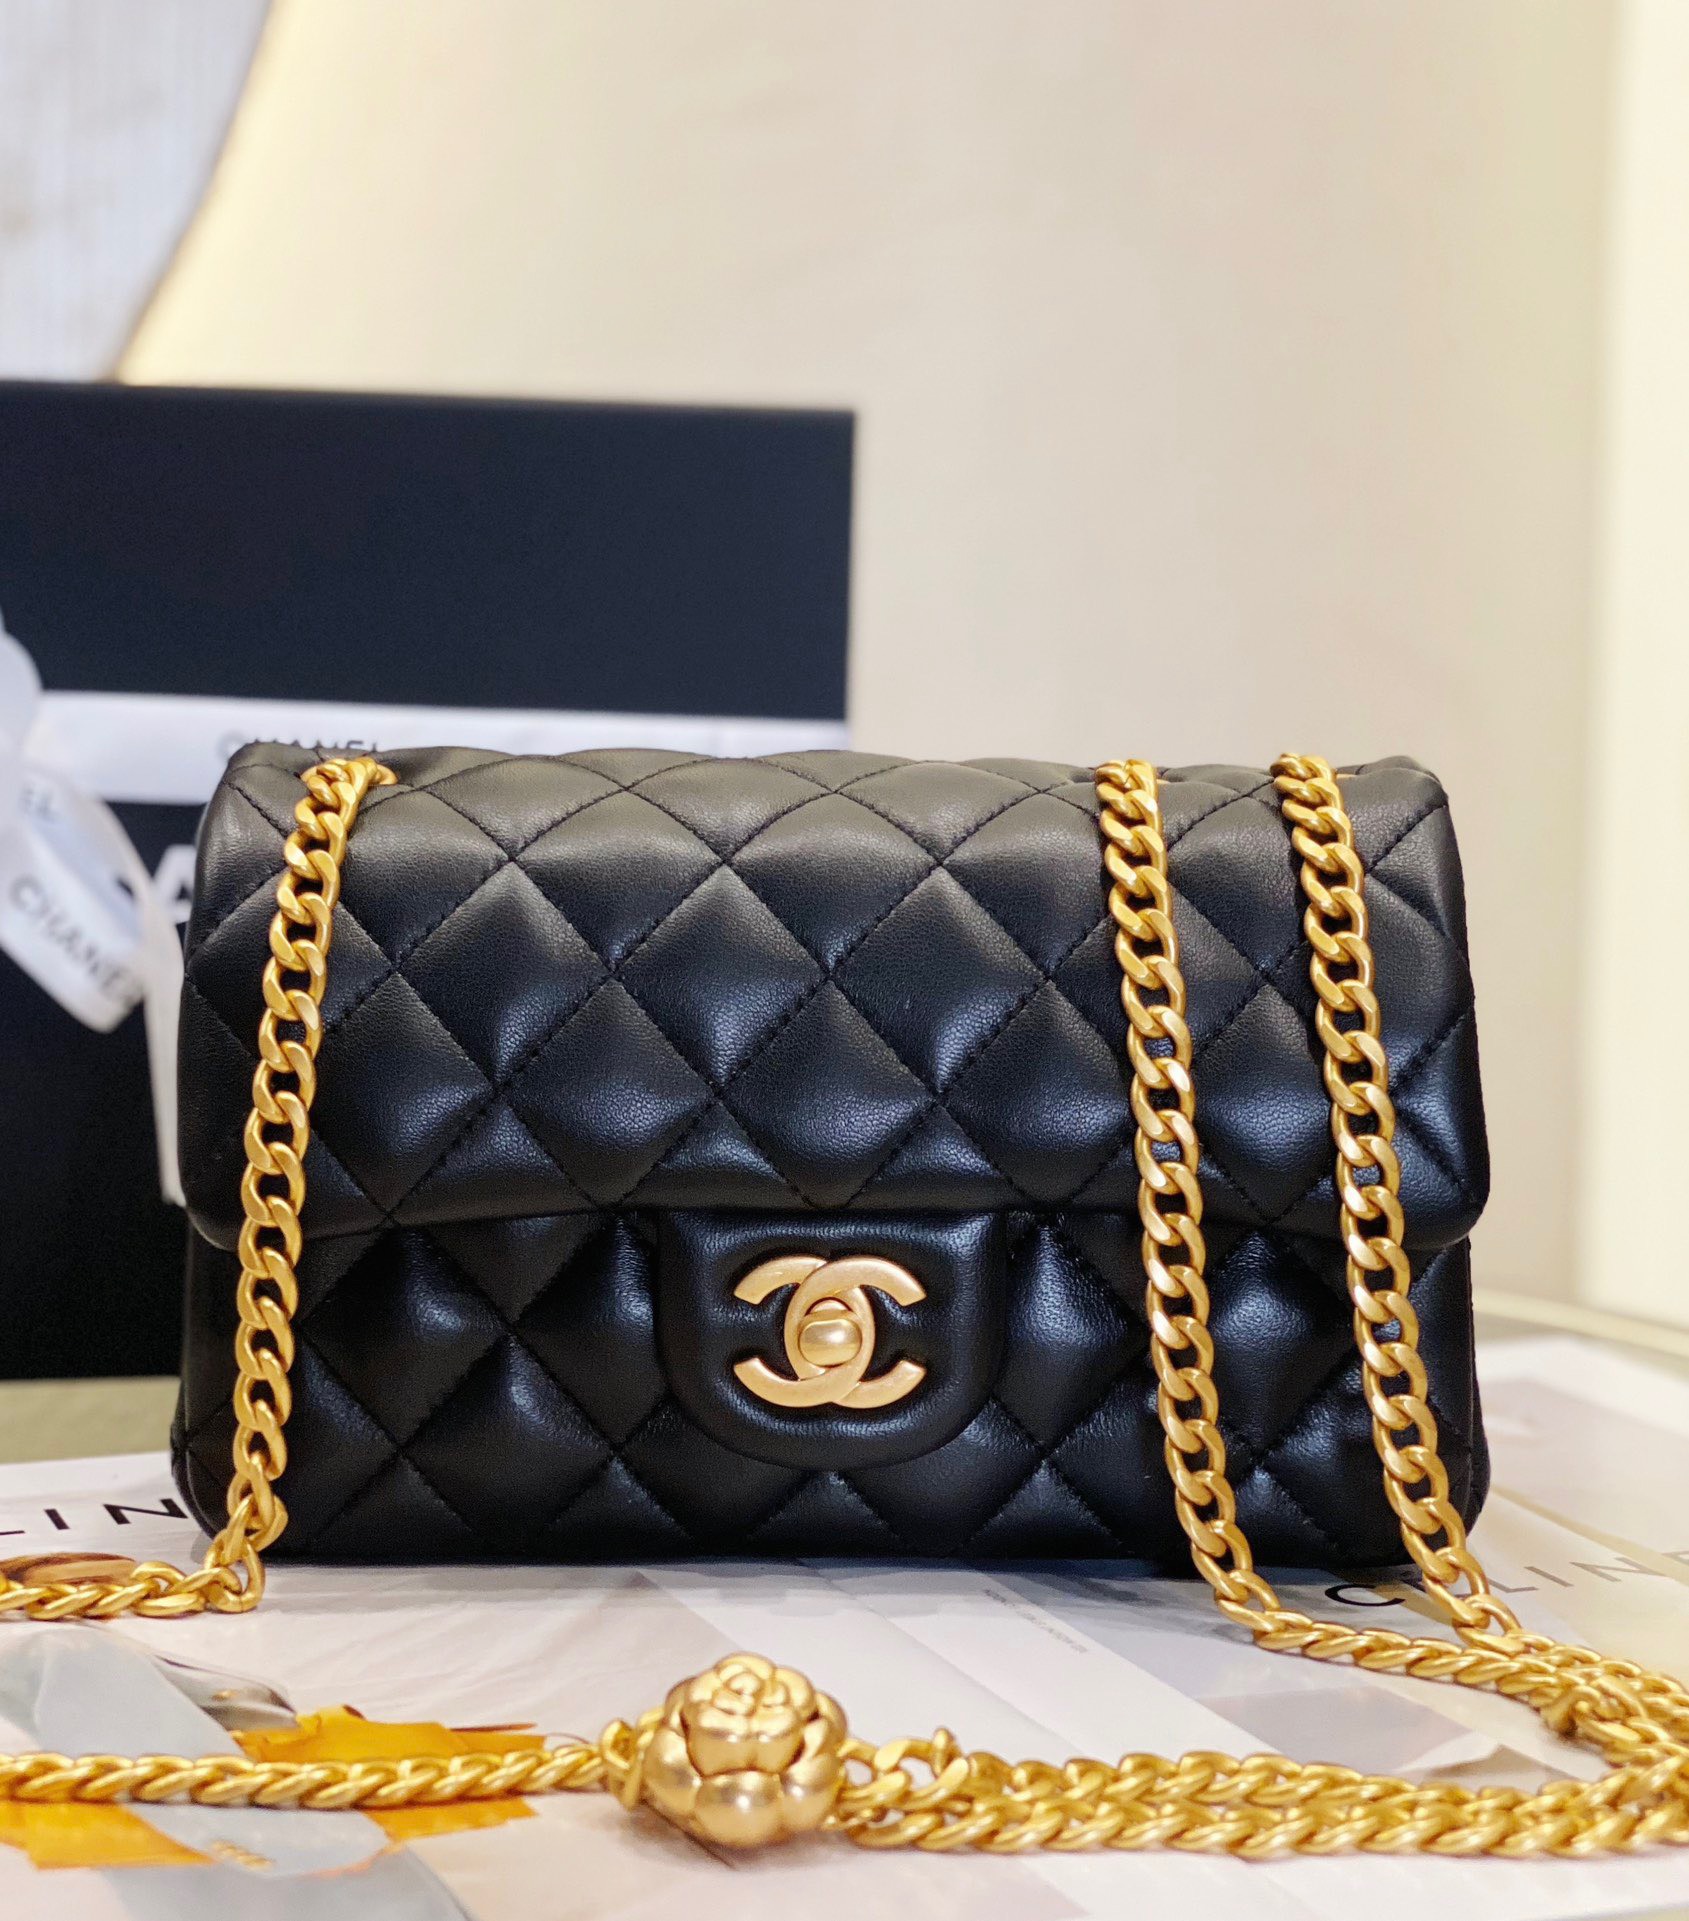 Túi xách Chanel Gabrielle hobo bag siêu cấp màu trắng đen size 28cm – 93824  – Túi Xách Nữ, Túi Xách Đẹp, Túi Xách Giày Dép Nữ – Bước Thời Trang